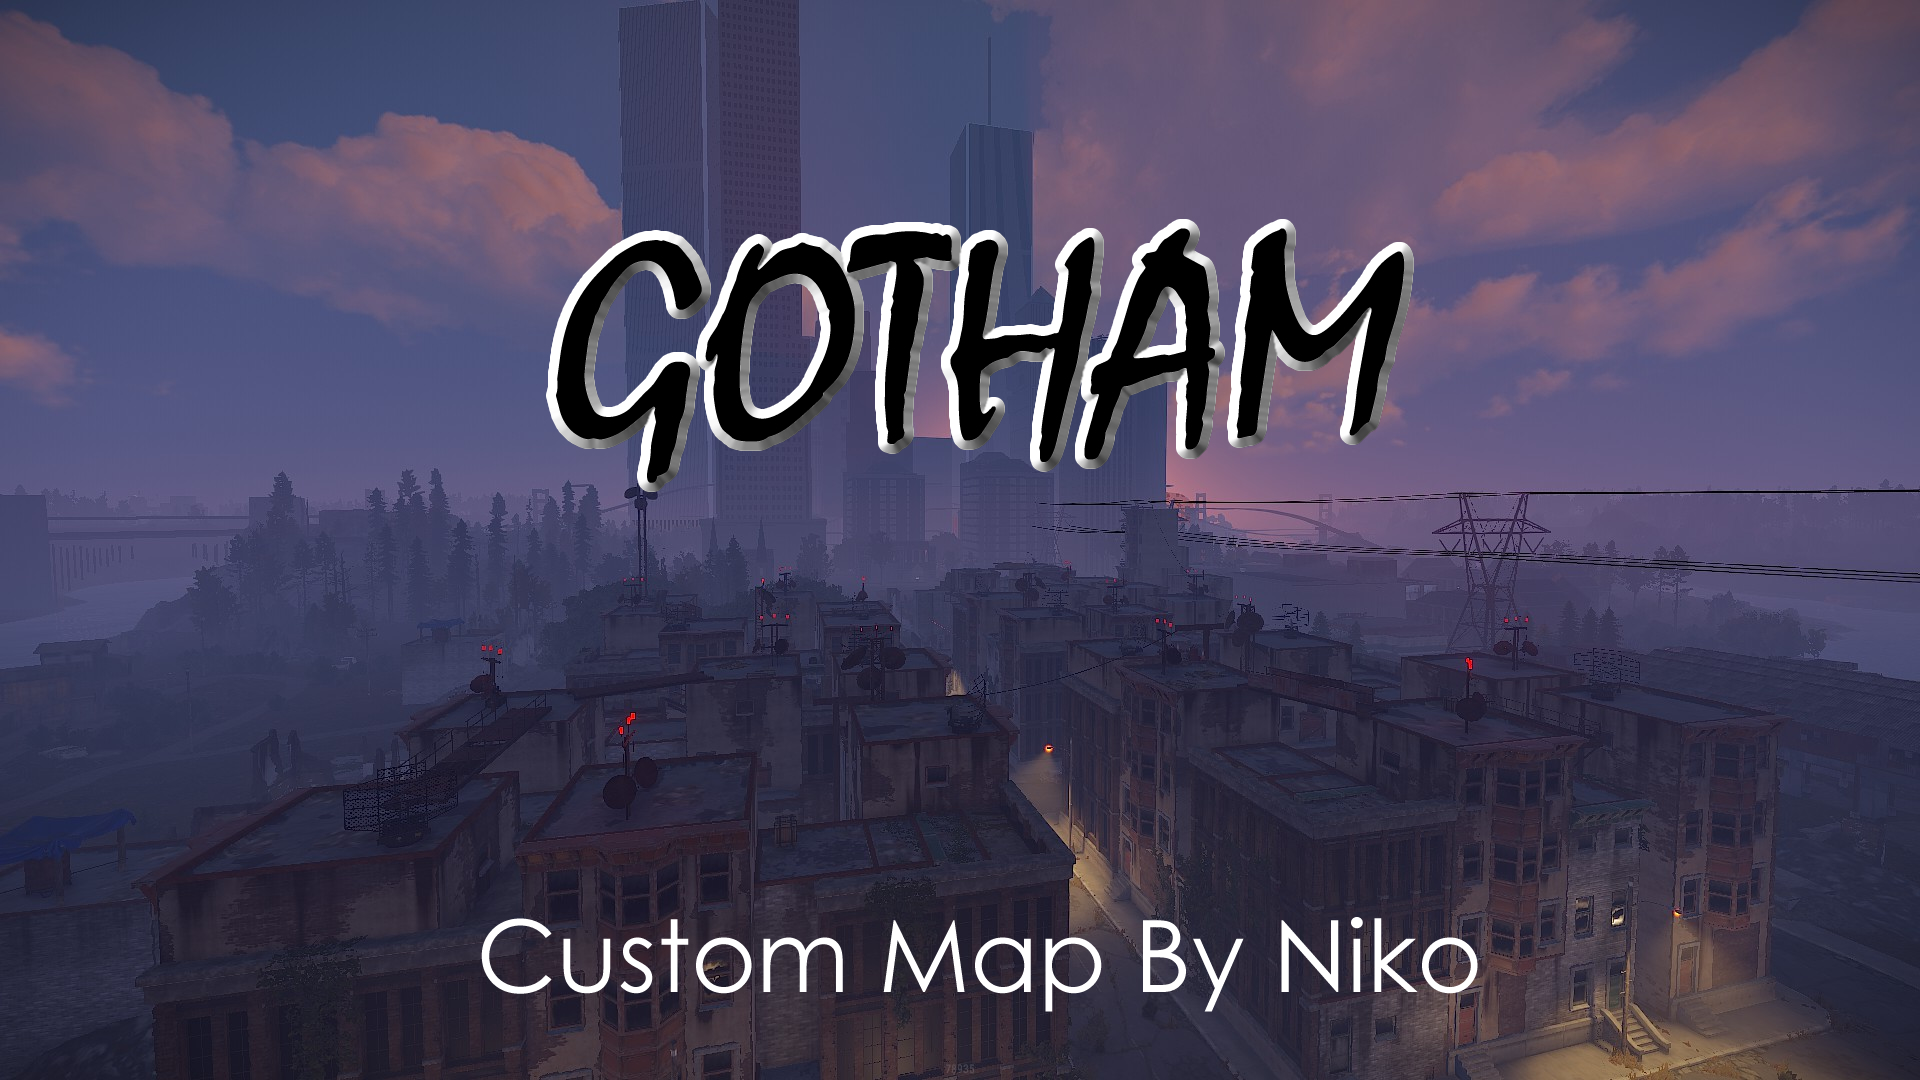 Gotham Custom Map by Niko